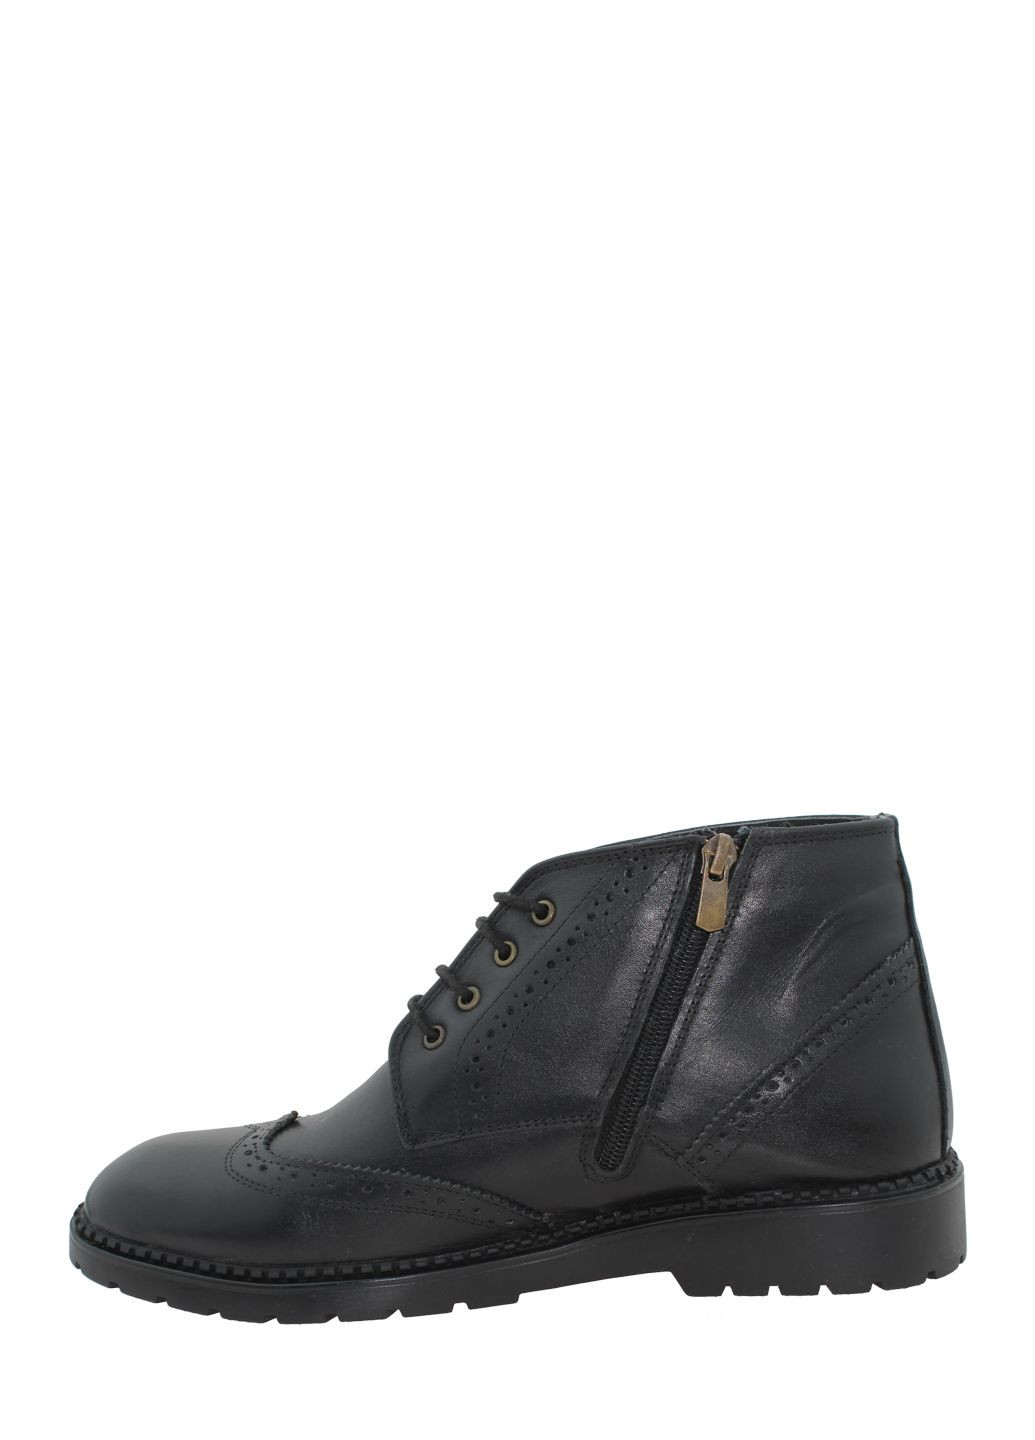 Черные осенние ботинки g1979.01 черный Goover